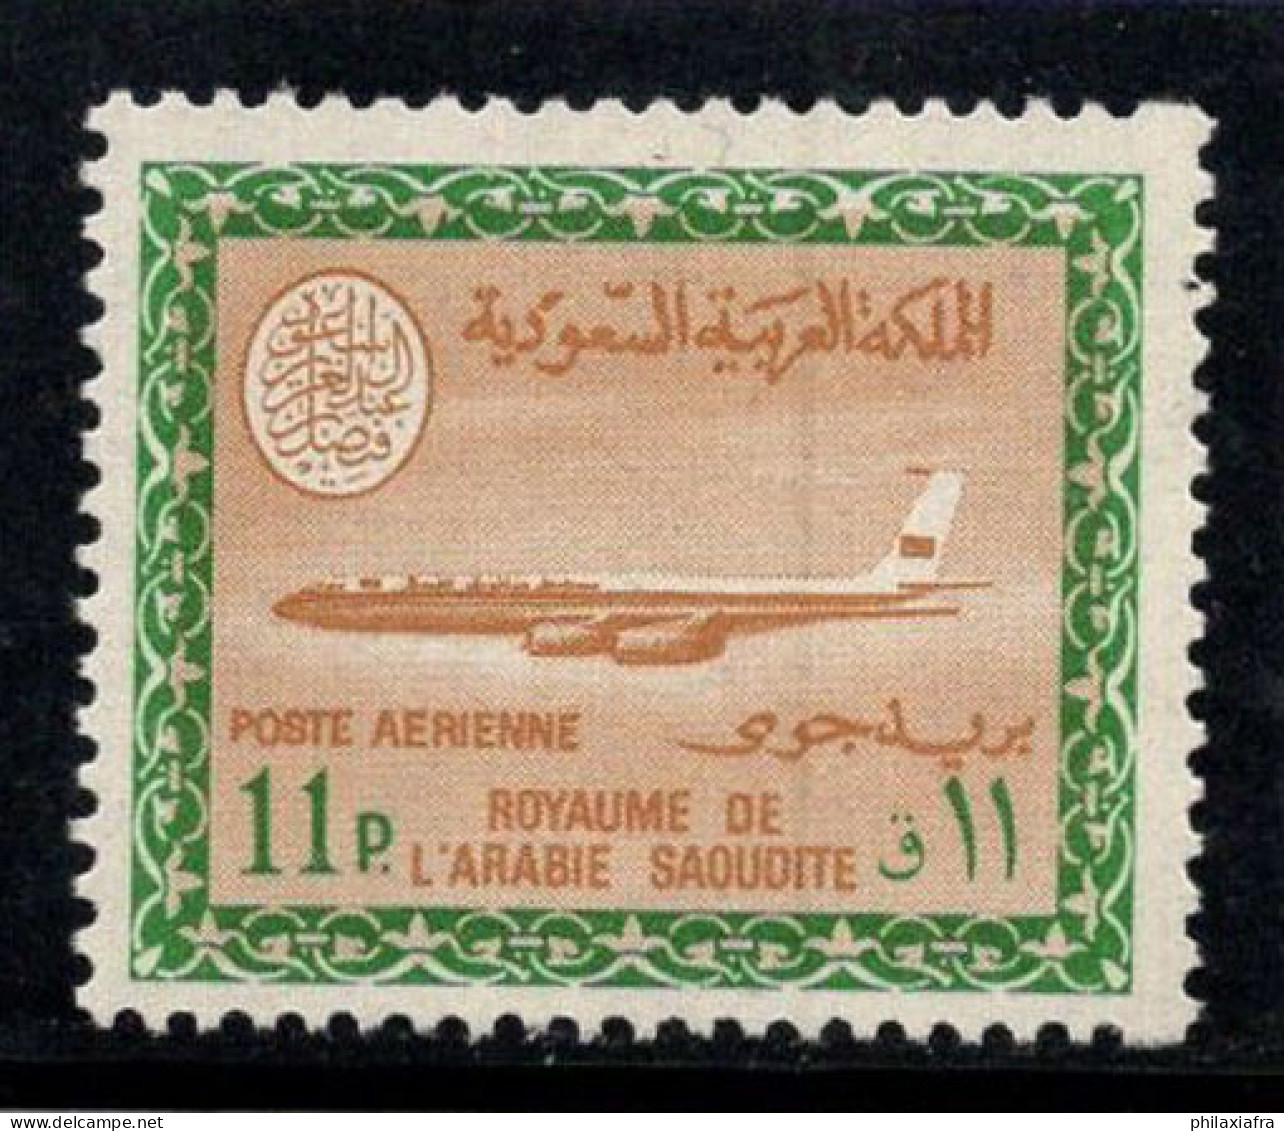 Arabie Saoudite 1966-75 Mi. 365 Y Neuf ** 100% Poste Aérienne 11 Pia, Boeing 720 B - Saudi-Arabien